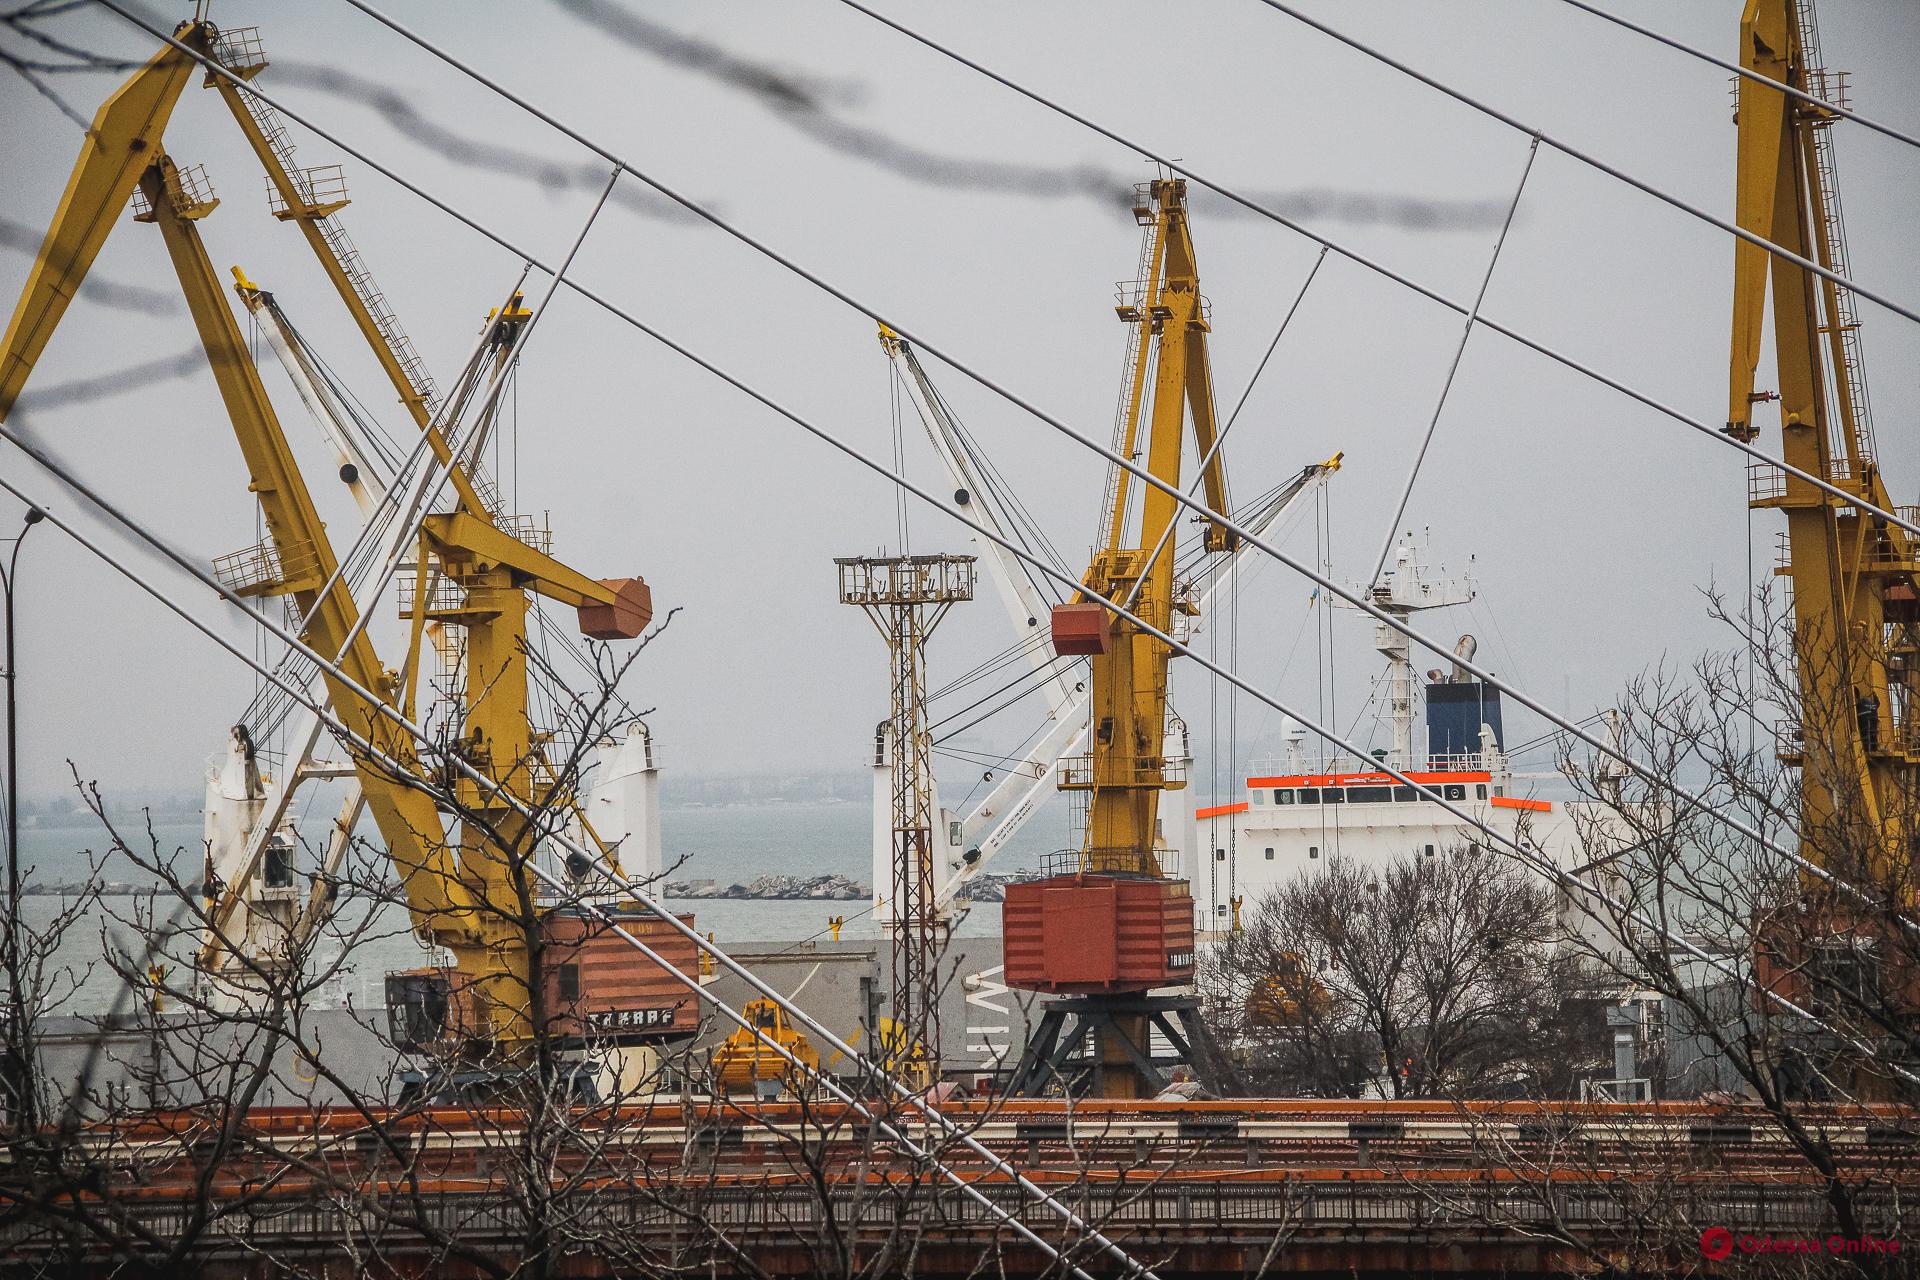 ООН: Блокирование южных портов Украины может спровоцировать глобальную продовольственную катастрофу